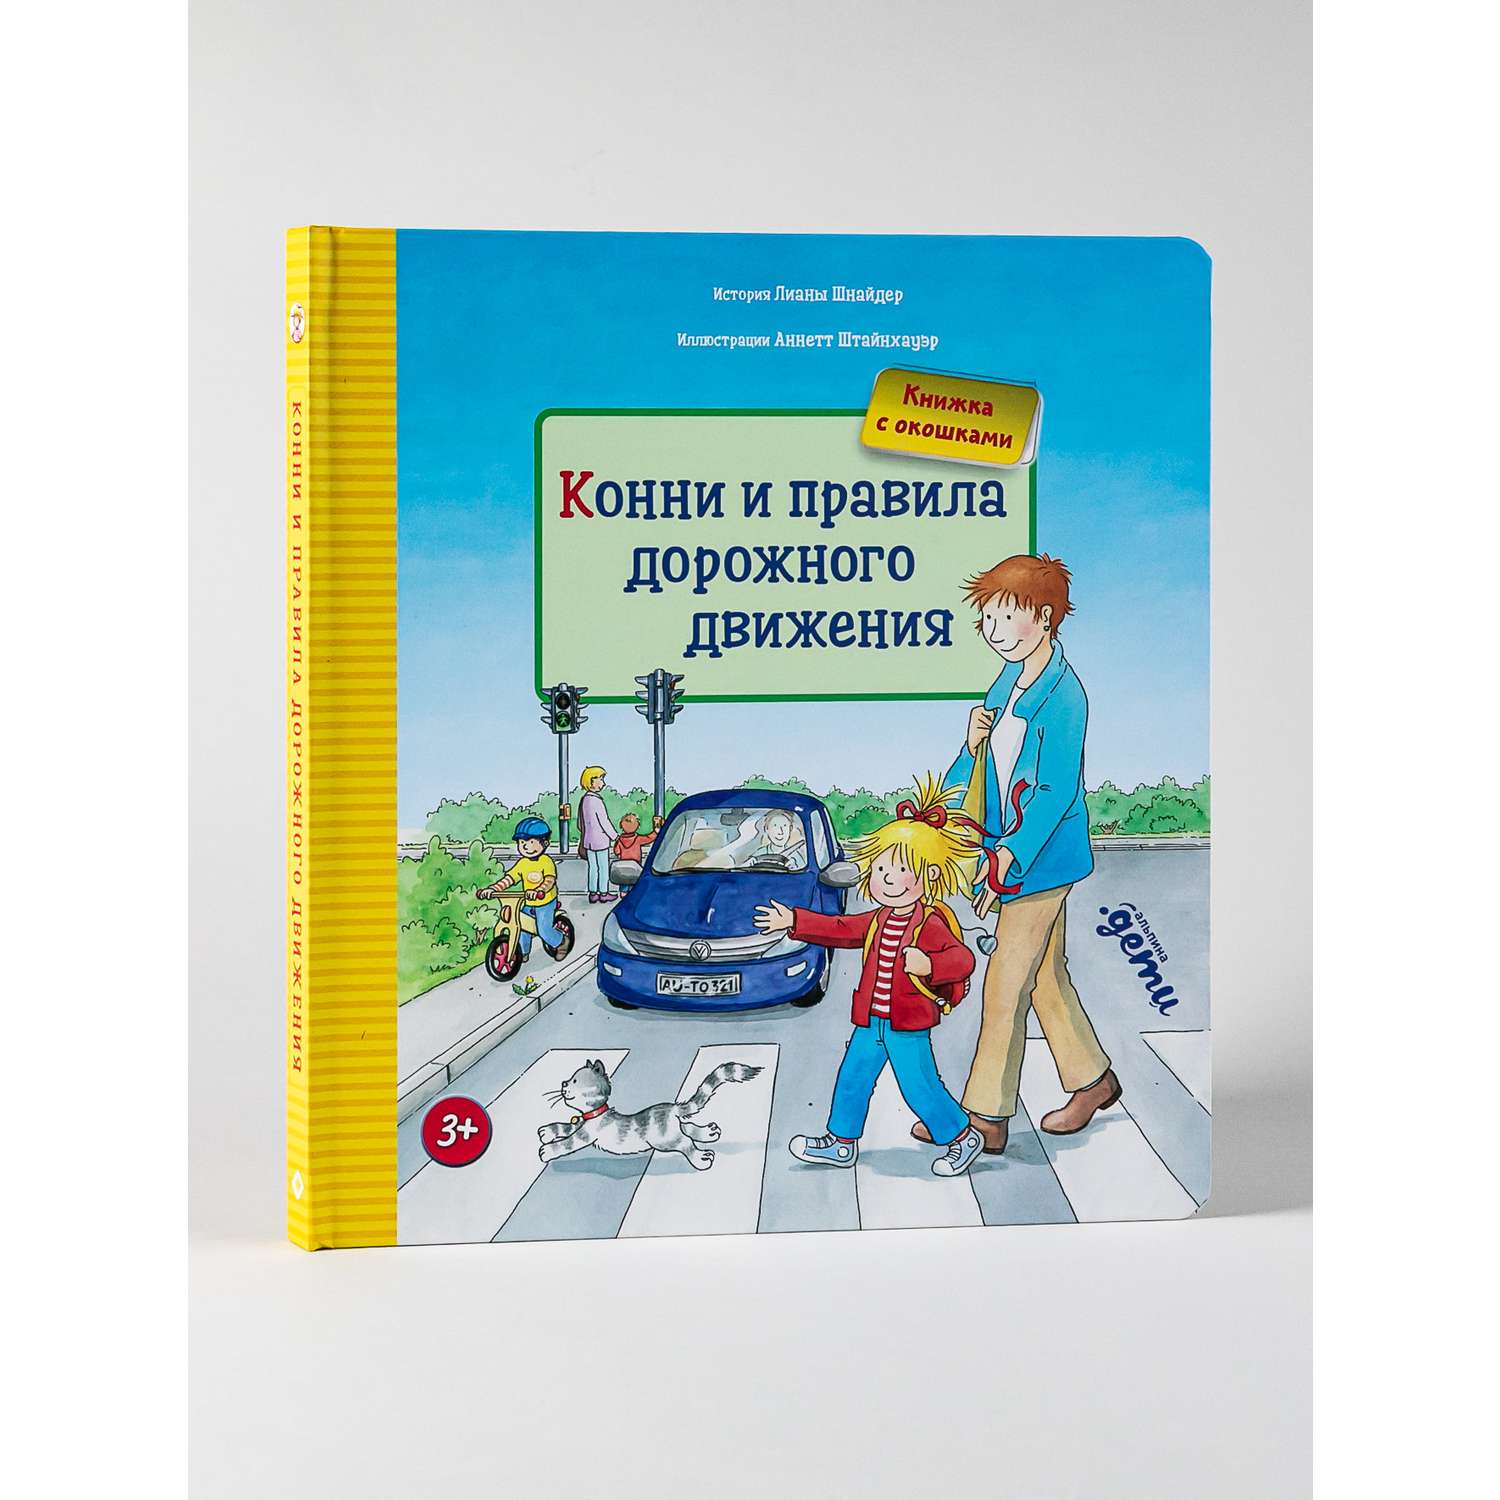 Книга Альпина. Дети Конни и правила дорожного движения Книги для детей - фото 1